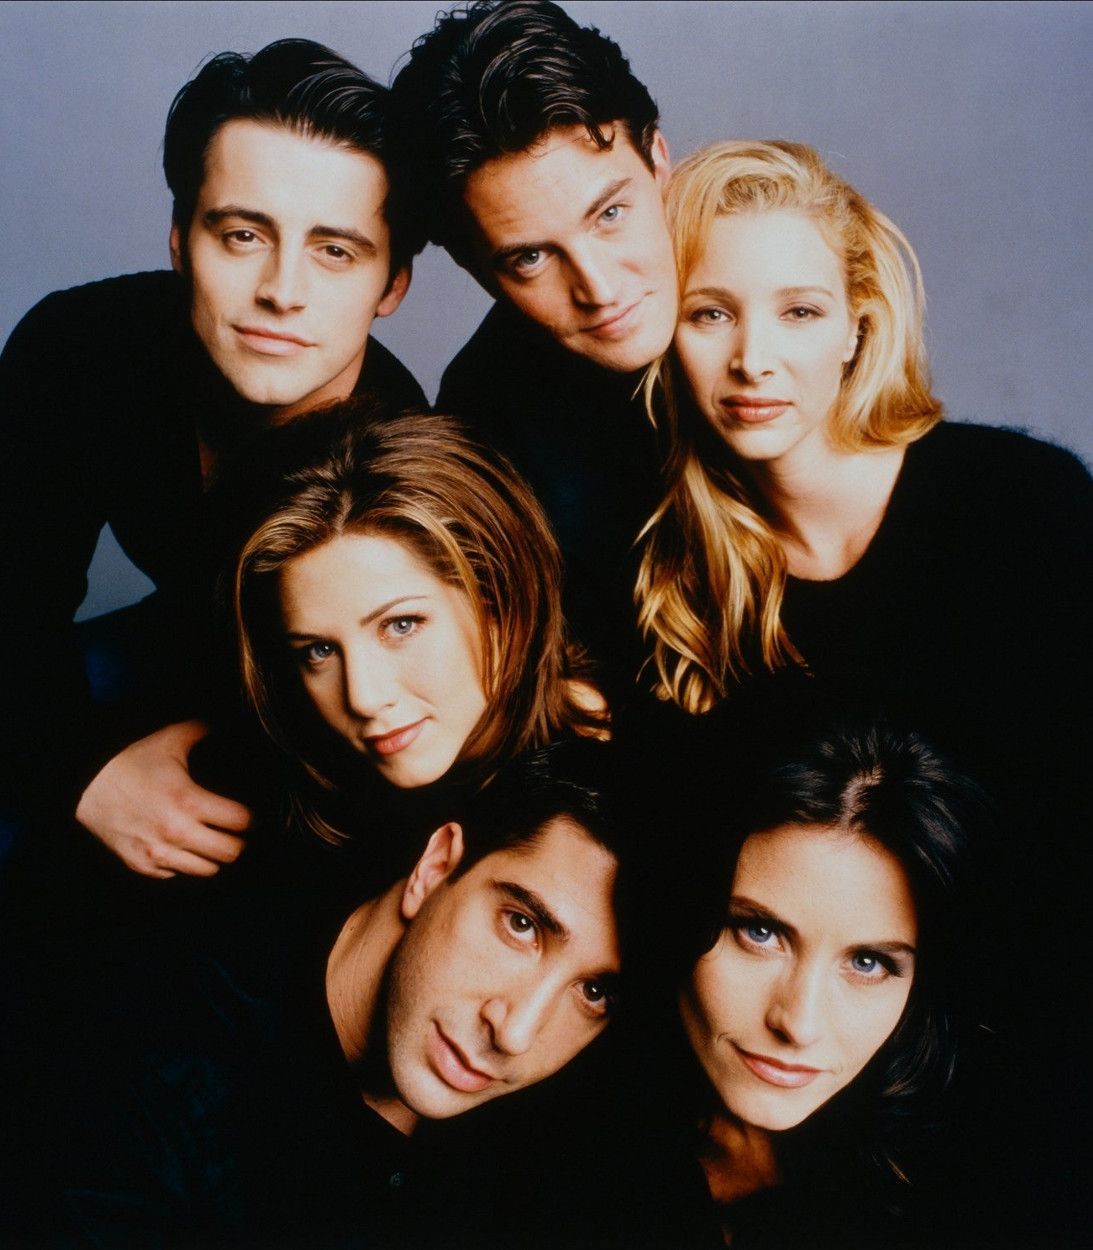 NBC's Friends cast photo